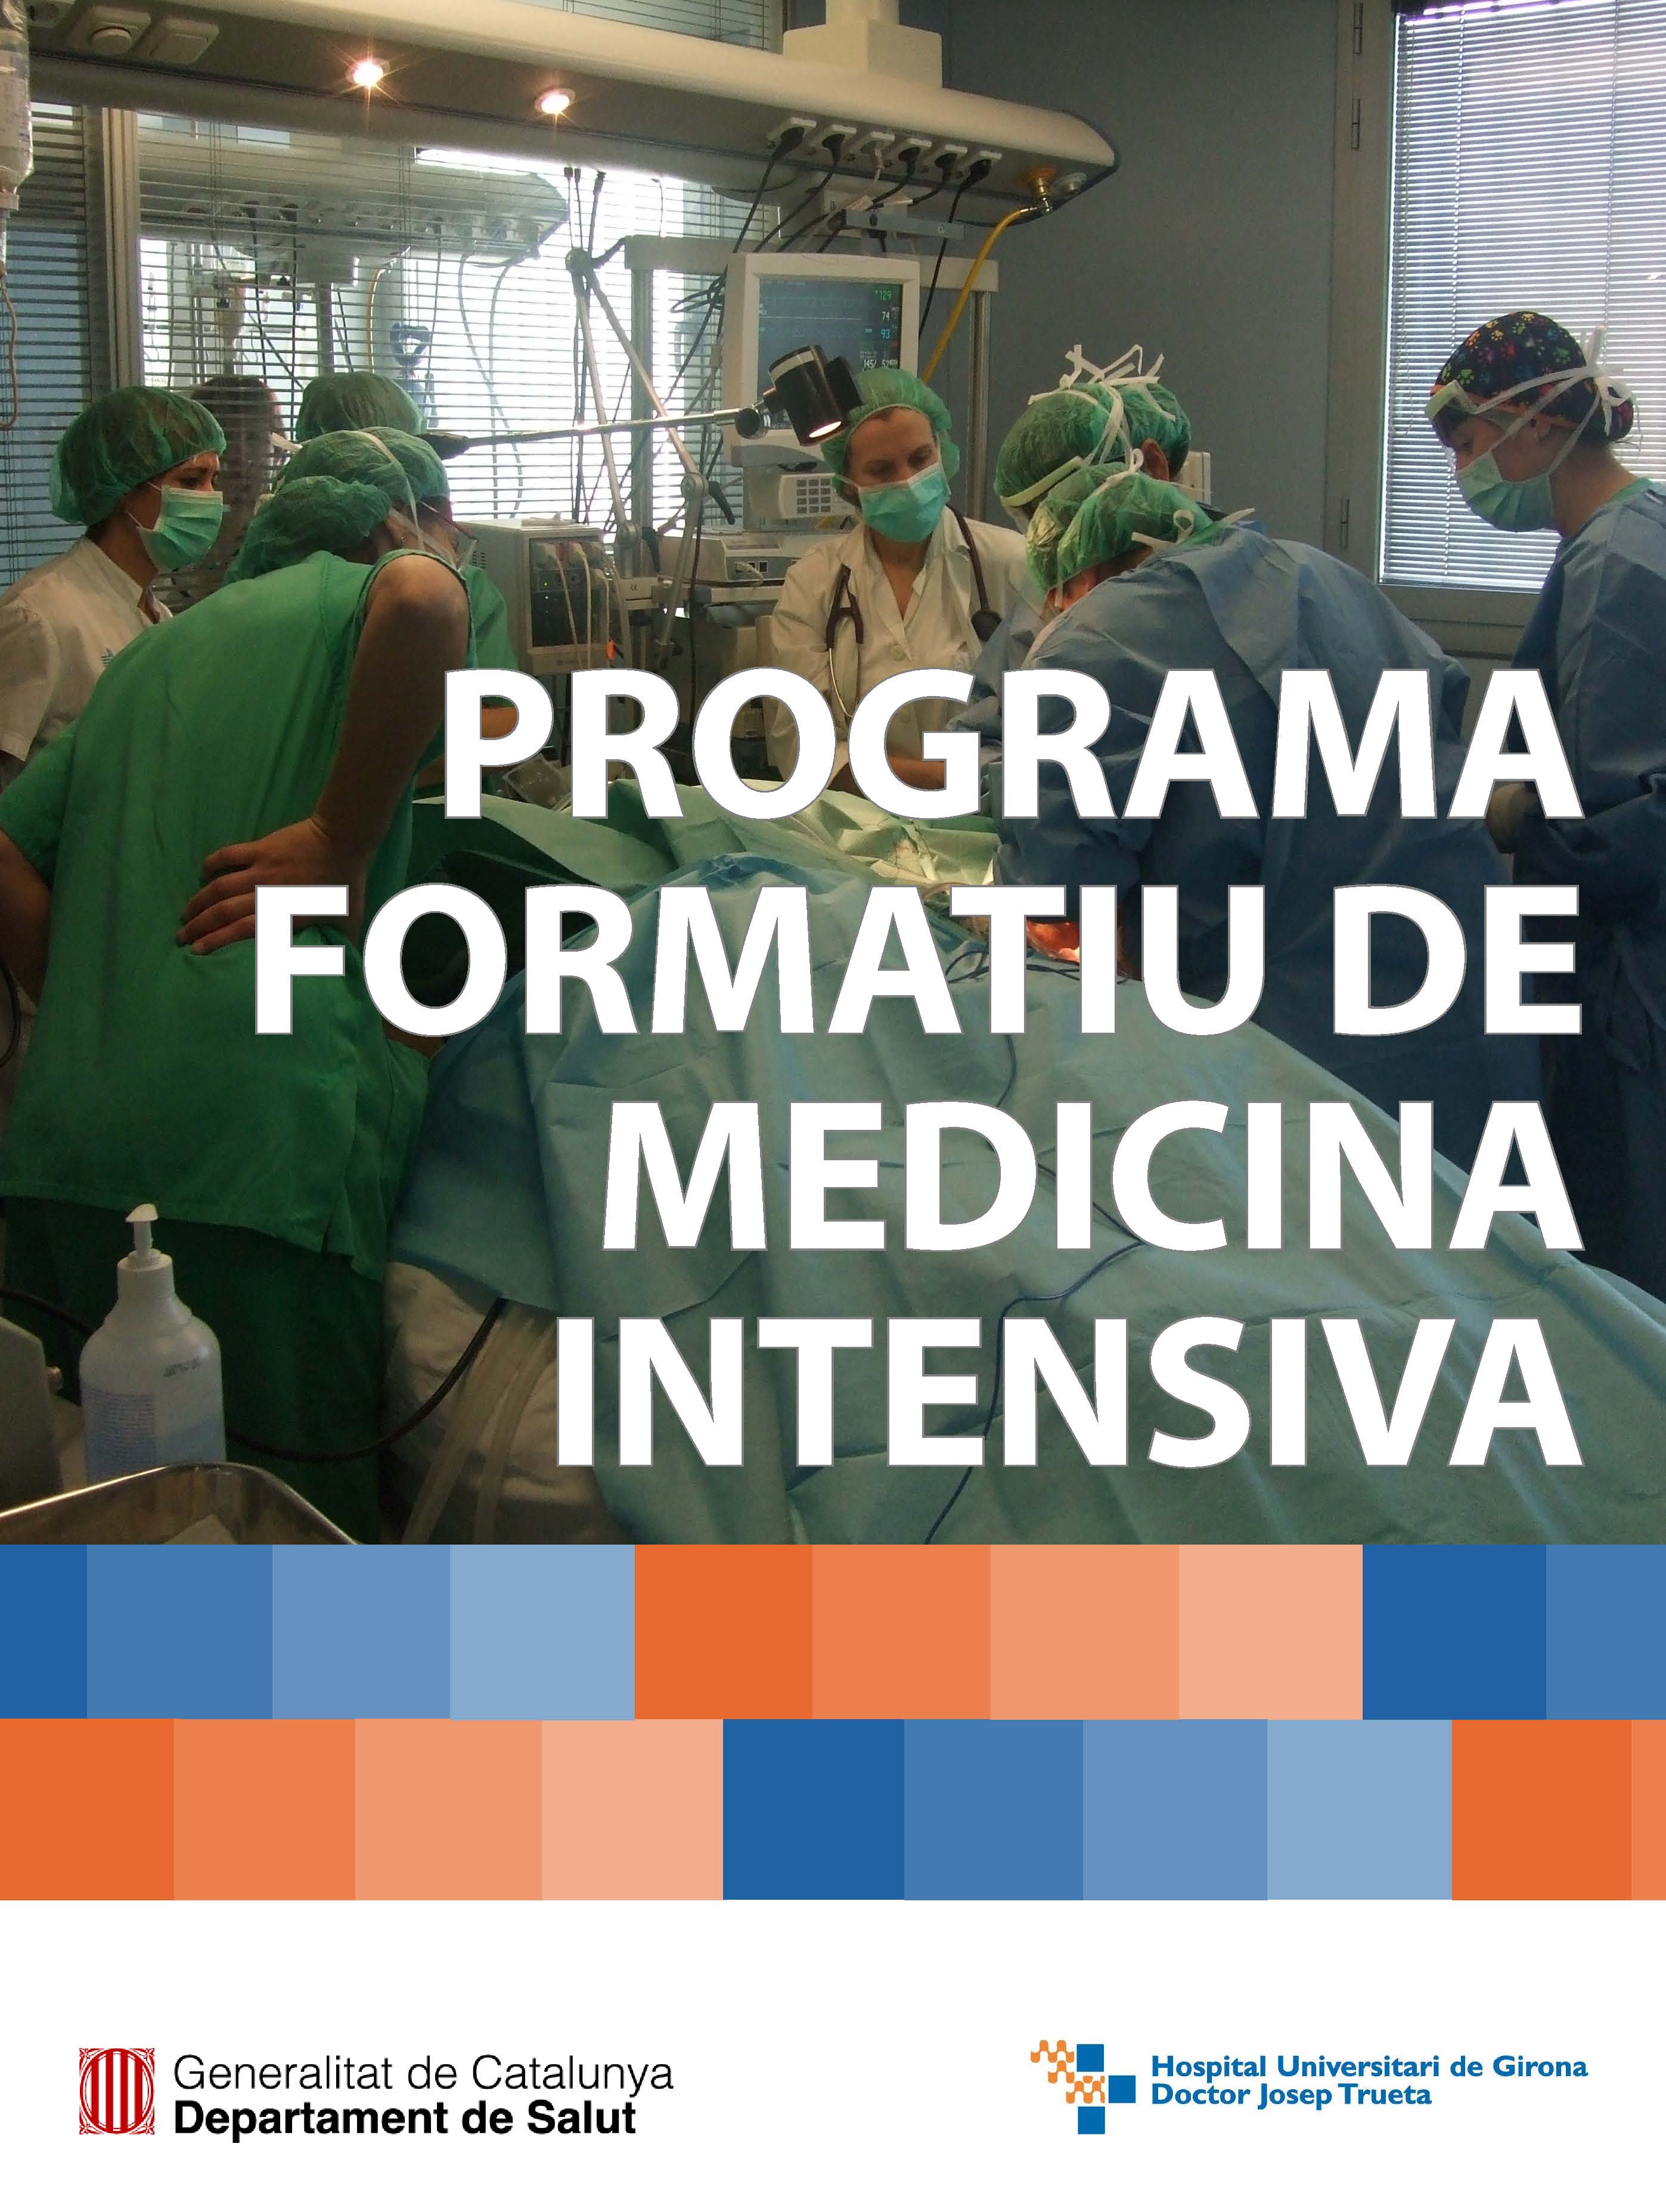 Programa formatiu de medicina intensiva en català